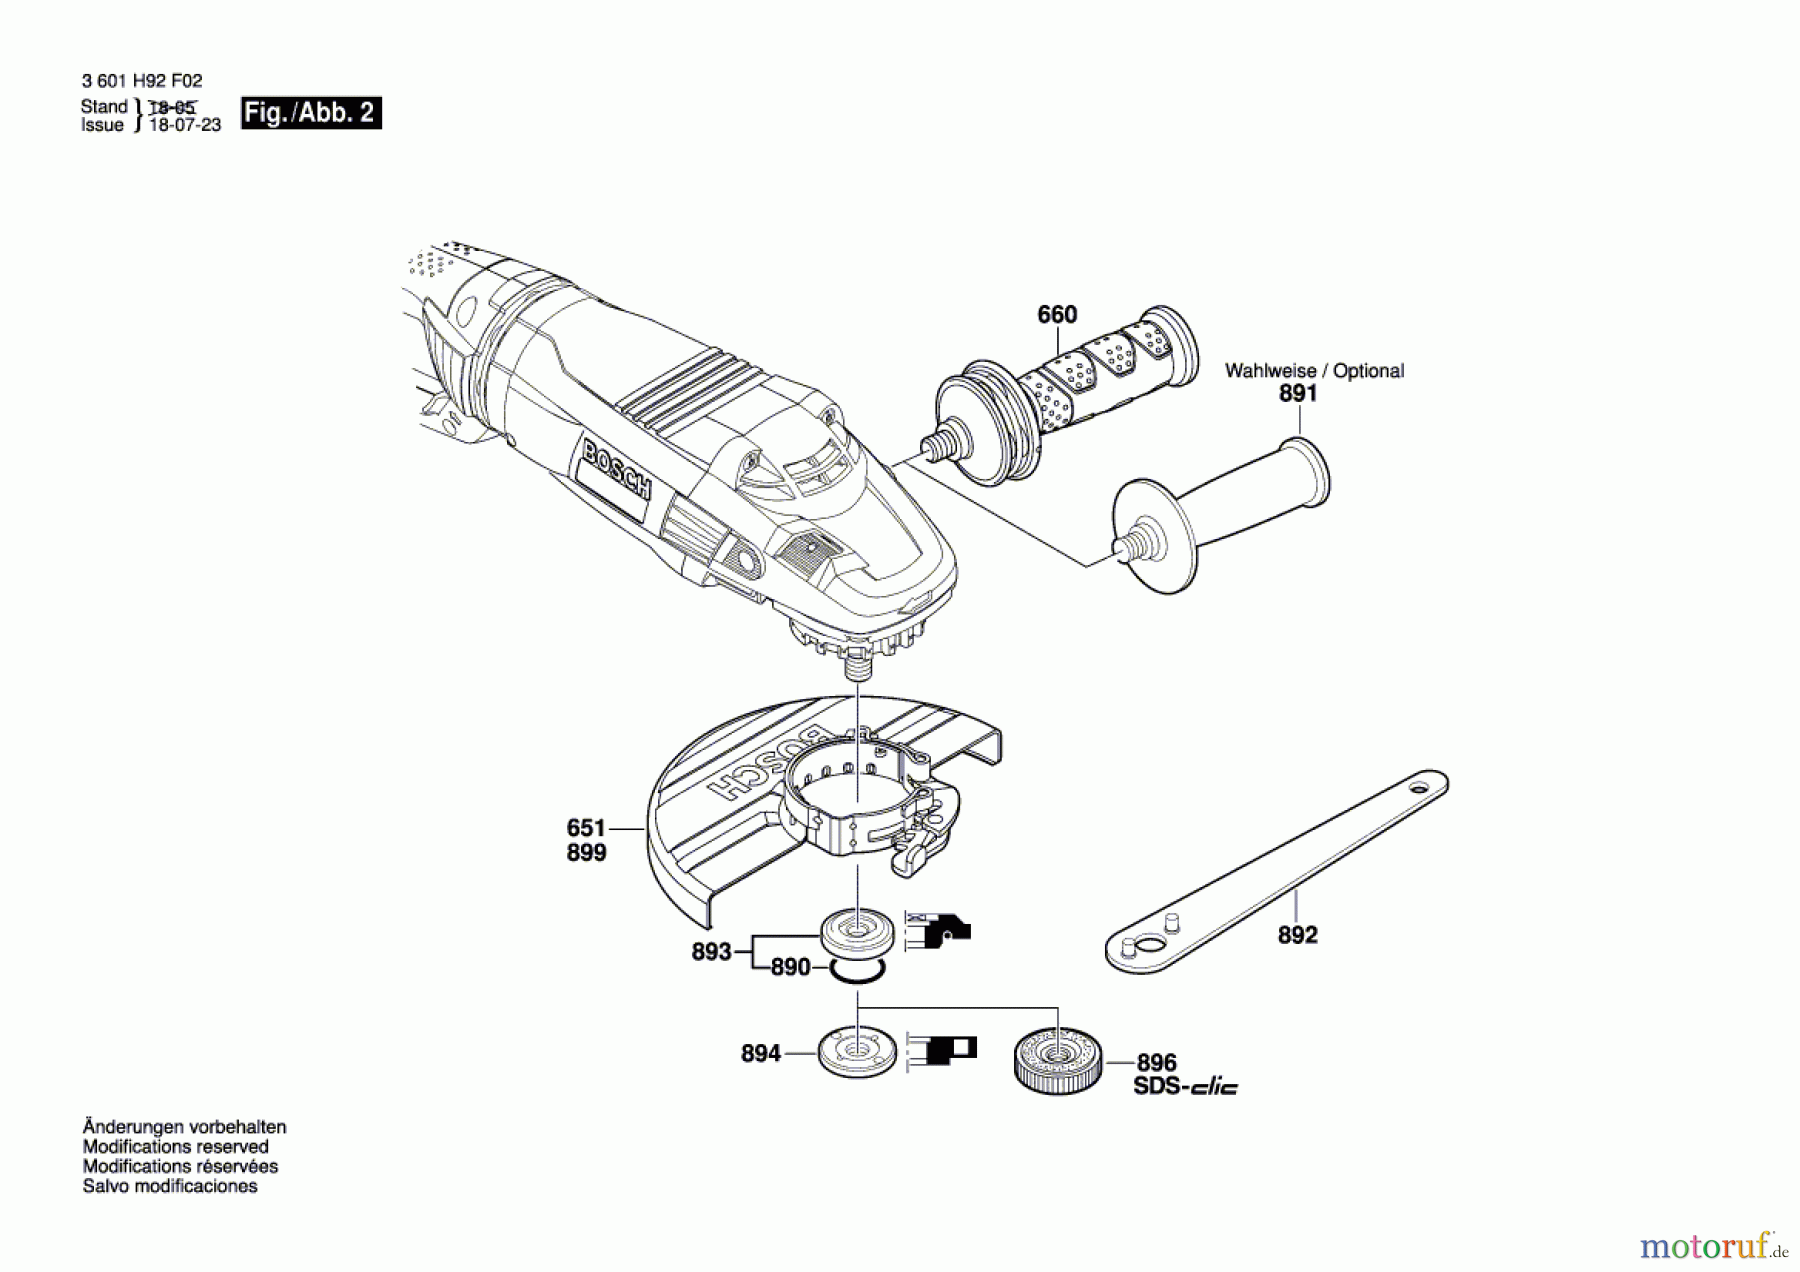  Bosch Werkzeug Winkelschleifer GWS 24-180 LVI Seite 2